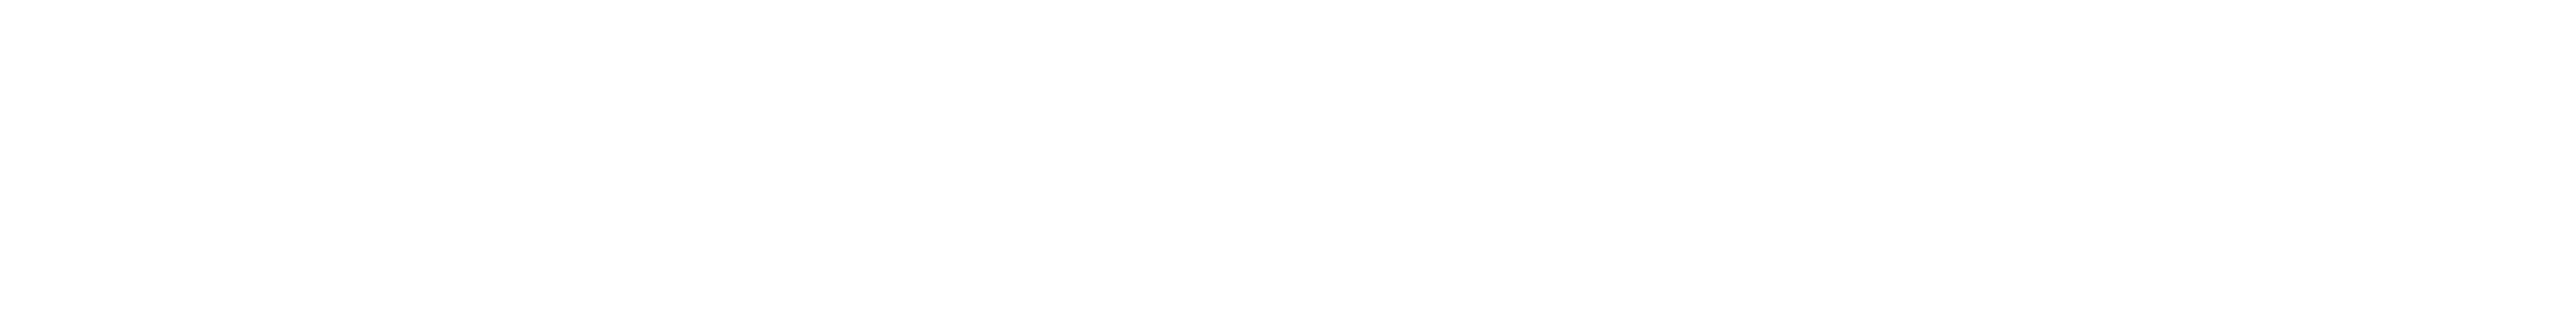 Joris Zwart logo